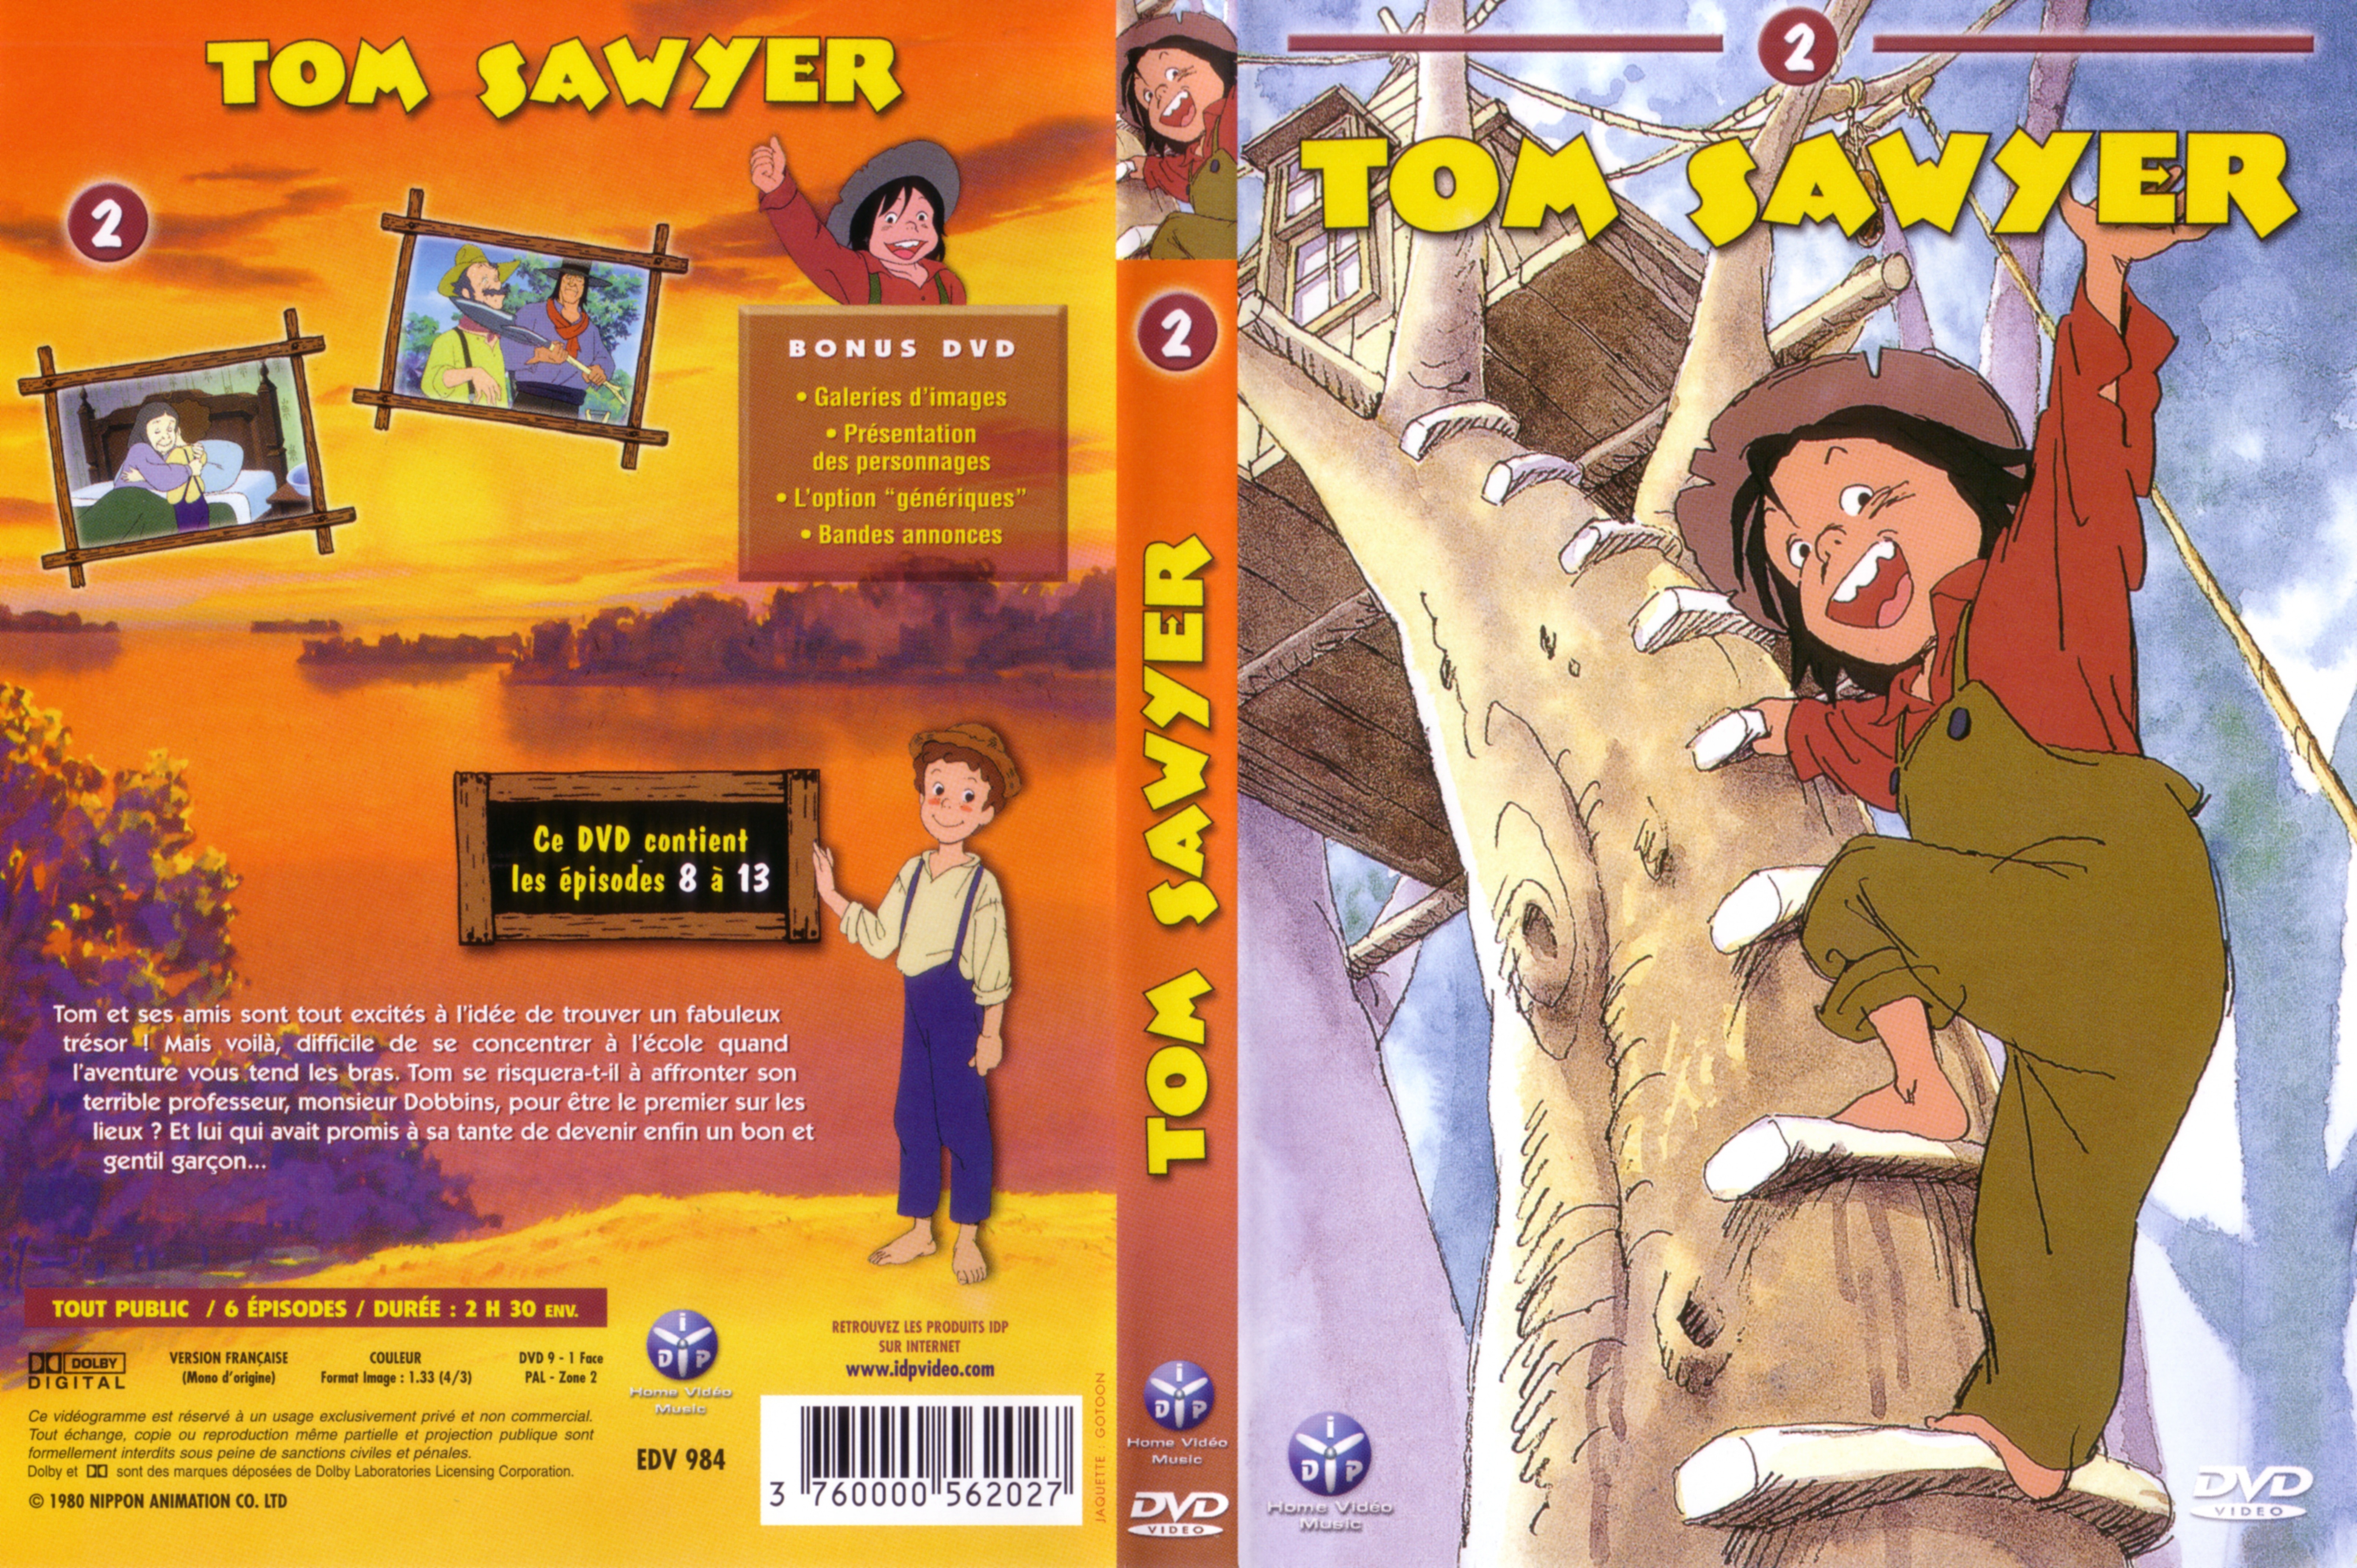 Jaquette DVD Tom Sawyer vol 2 v2